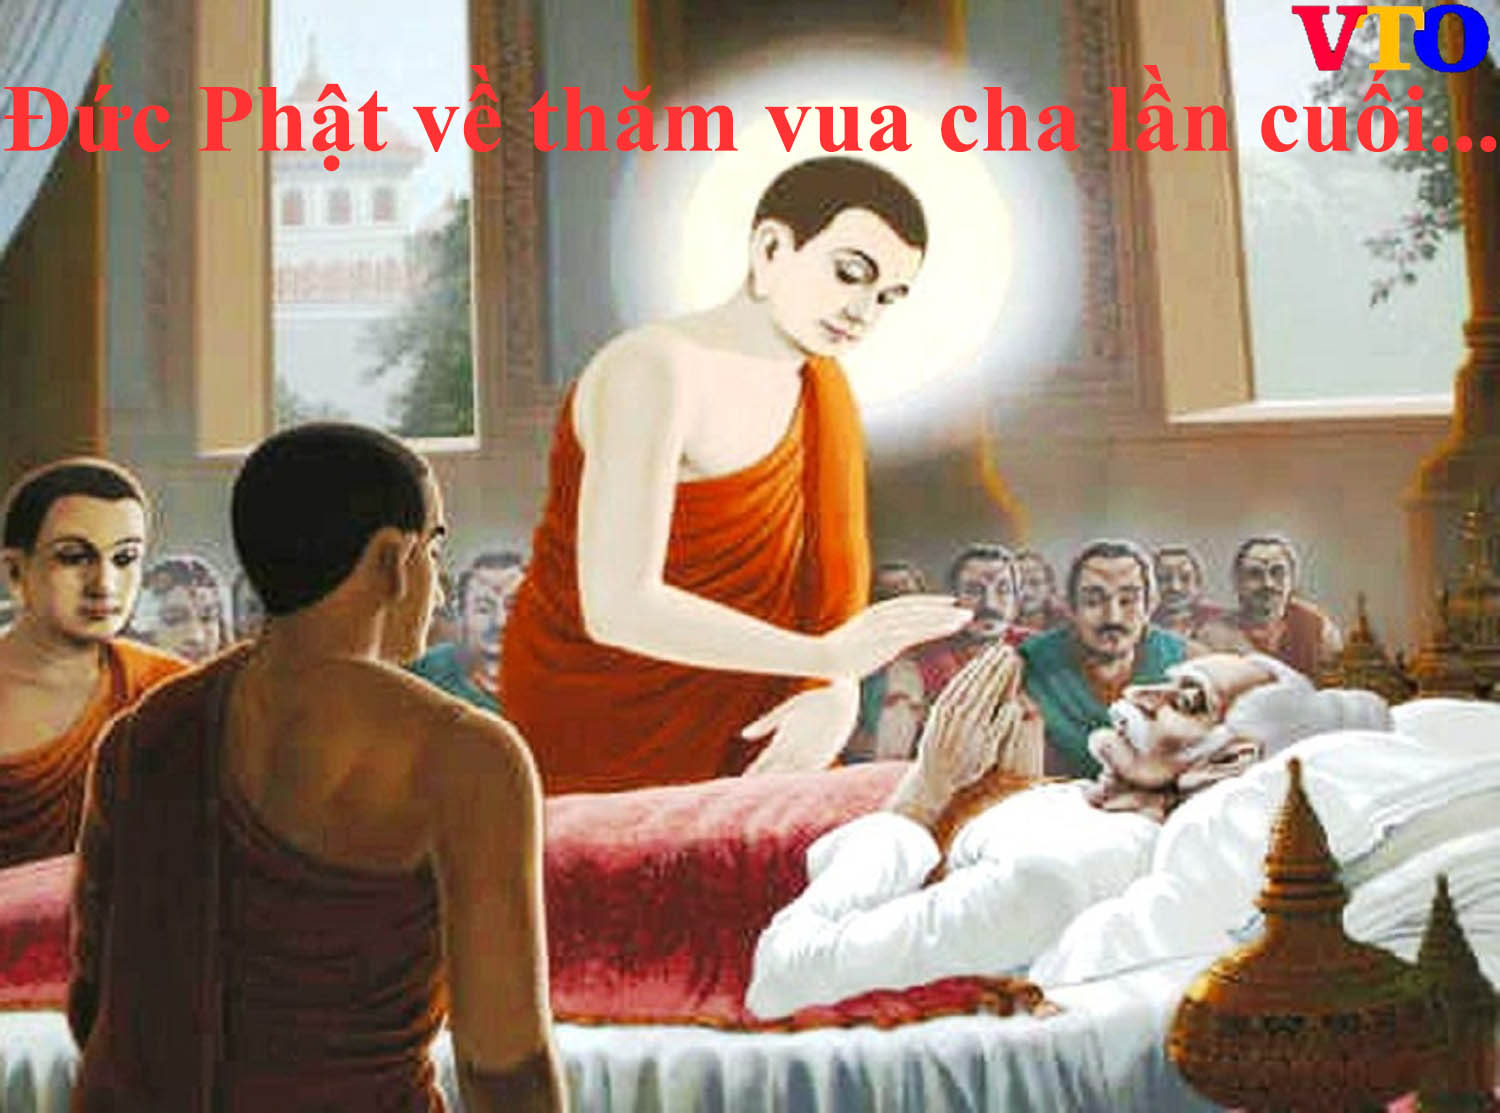 Đức Phật về thăm Vua cha lần cuối cùng như thế nào?